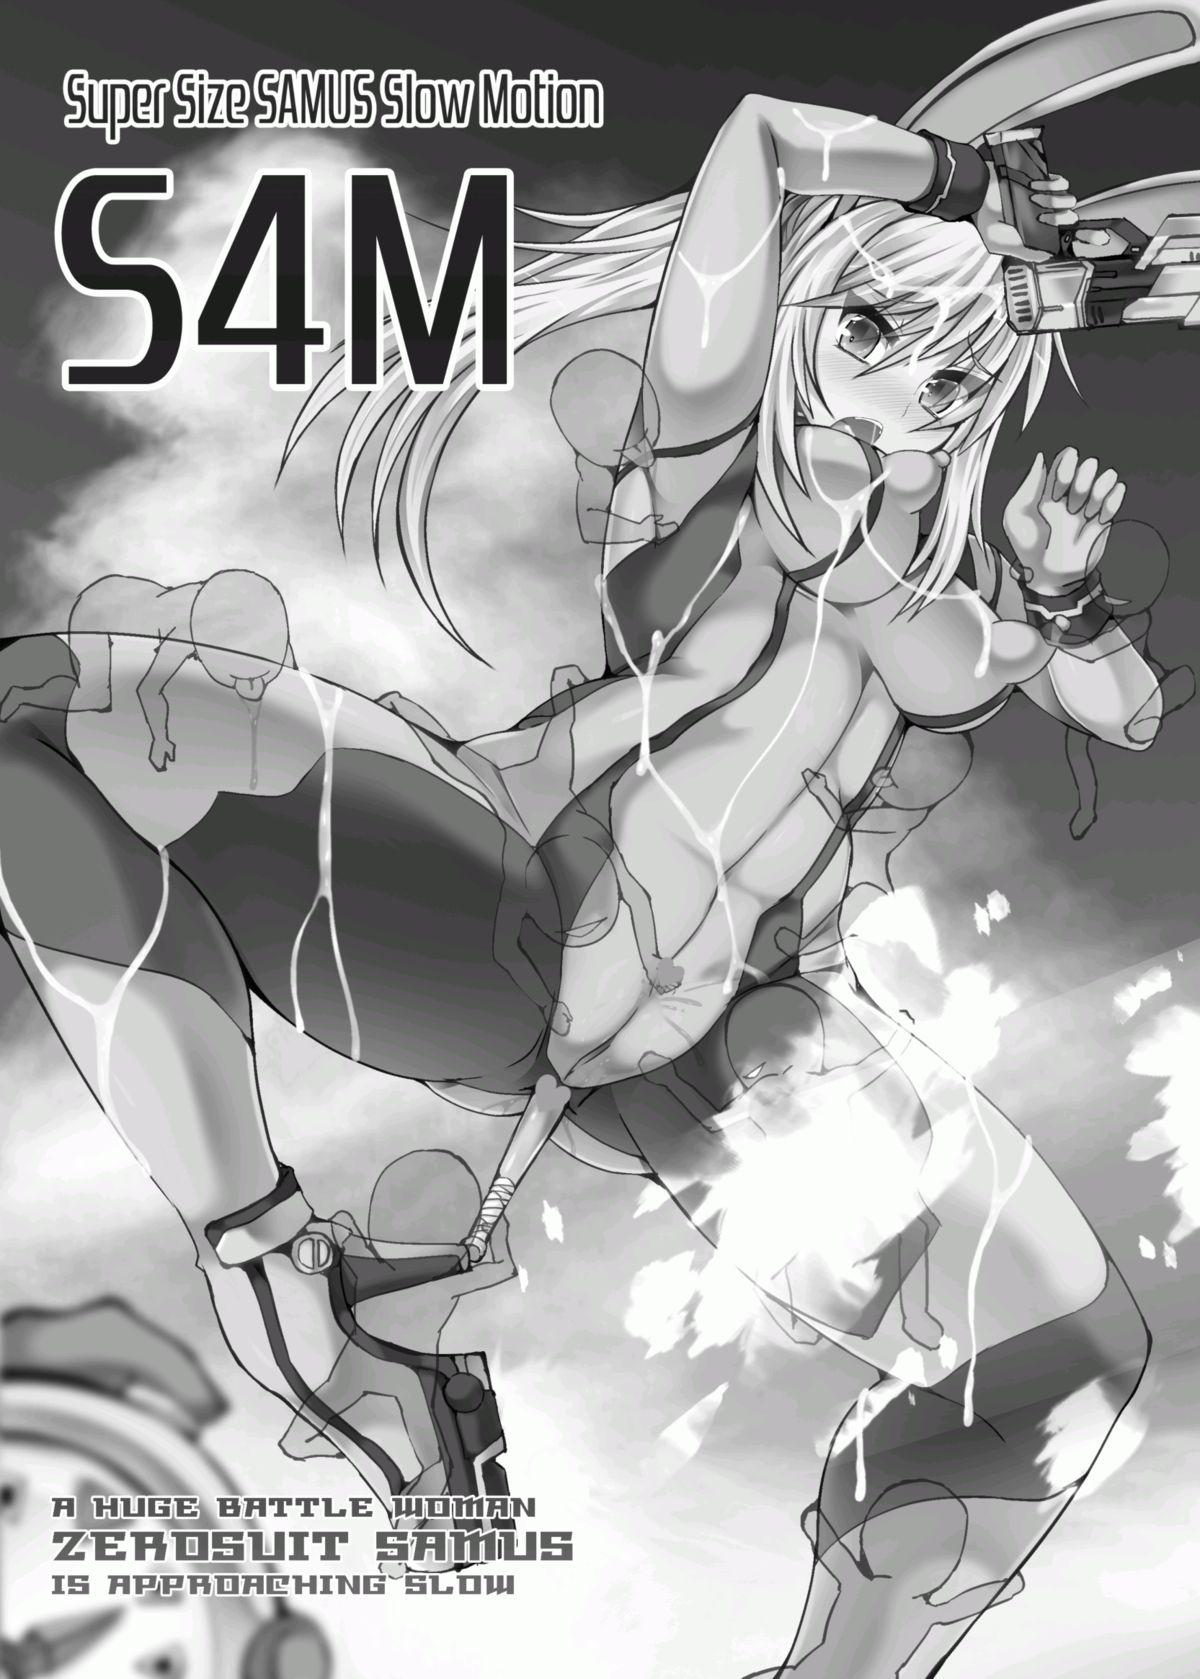 S4M 1